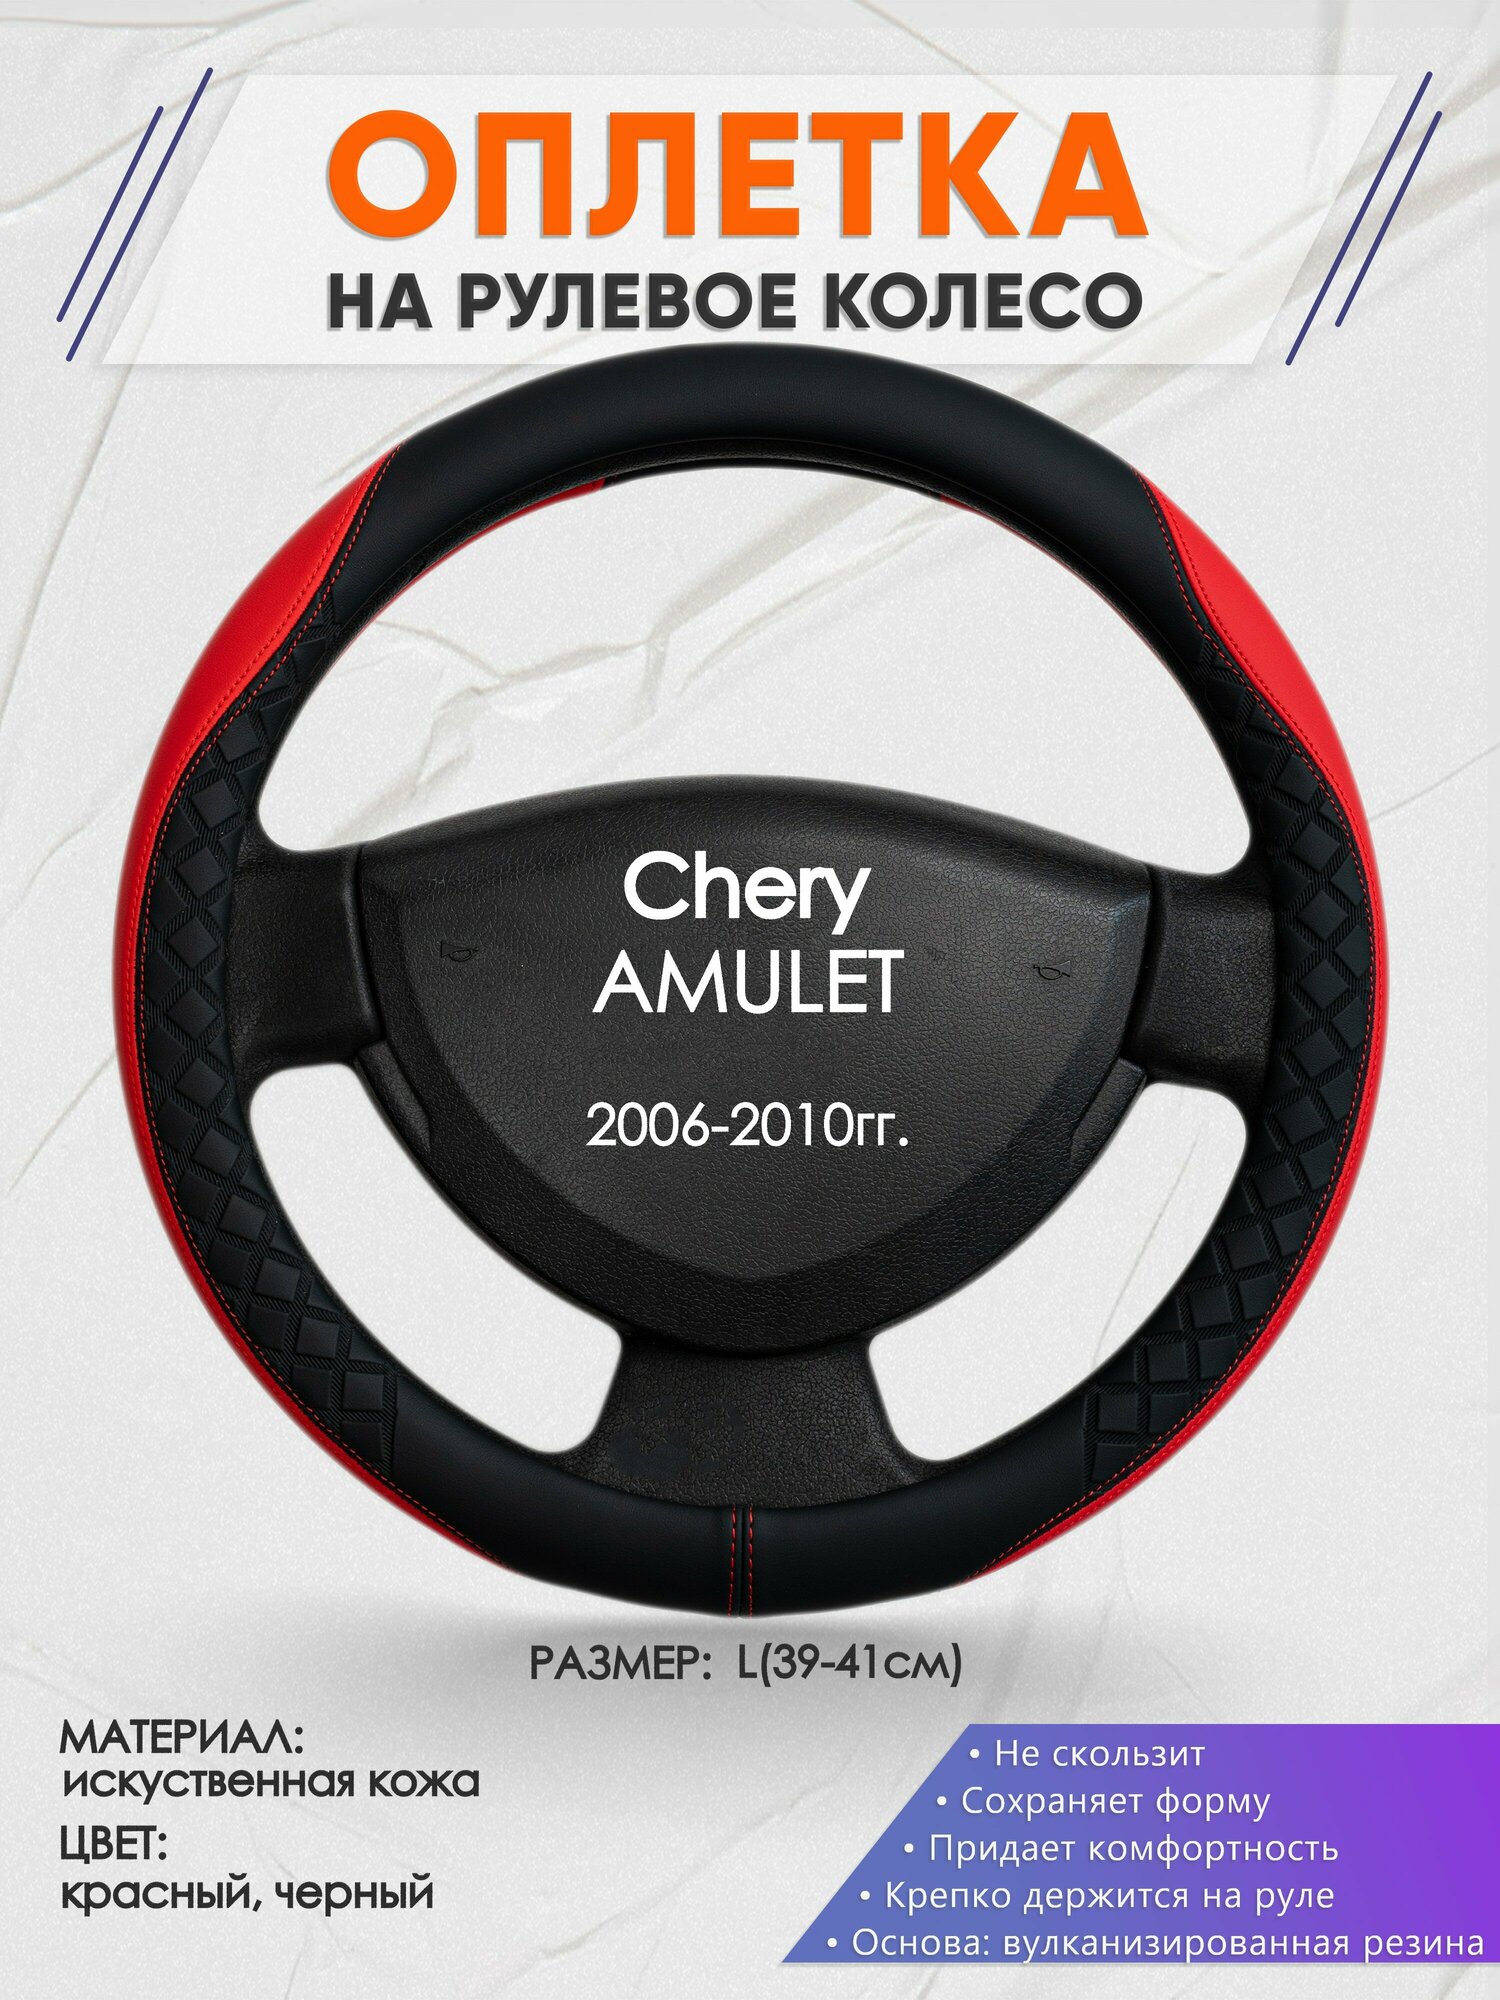 Оплетка на руль для Chery AMULET(Чери амулет) 2006-2010 L(39-41см) Искусственная кожа 14